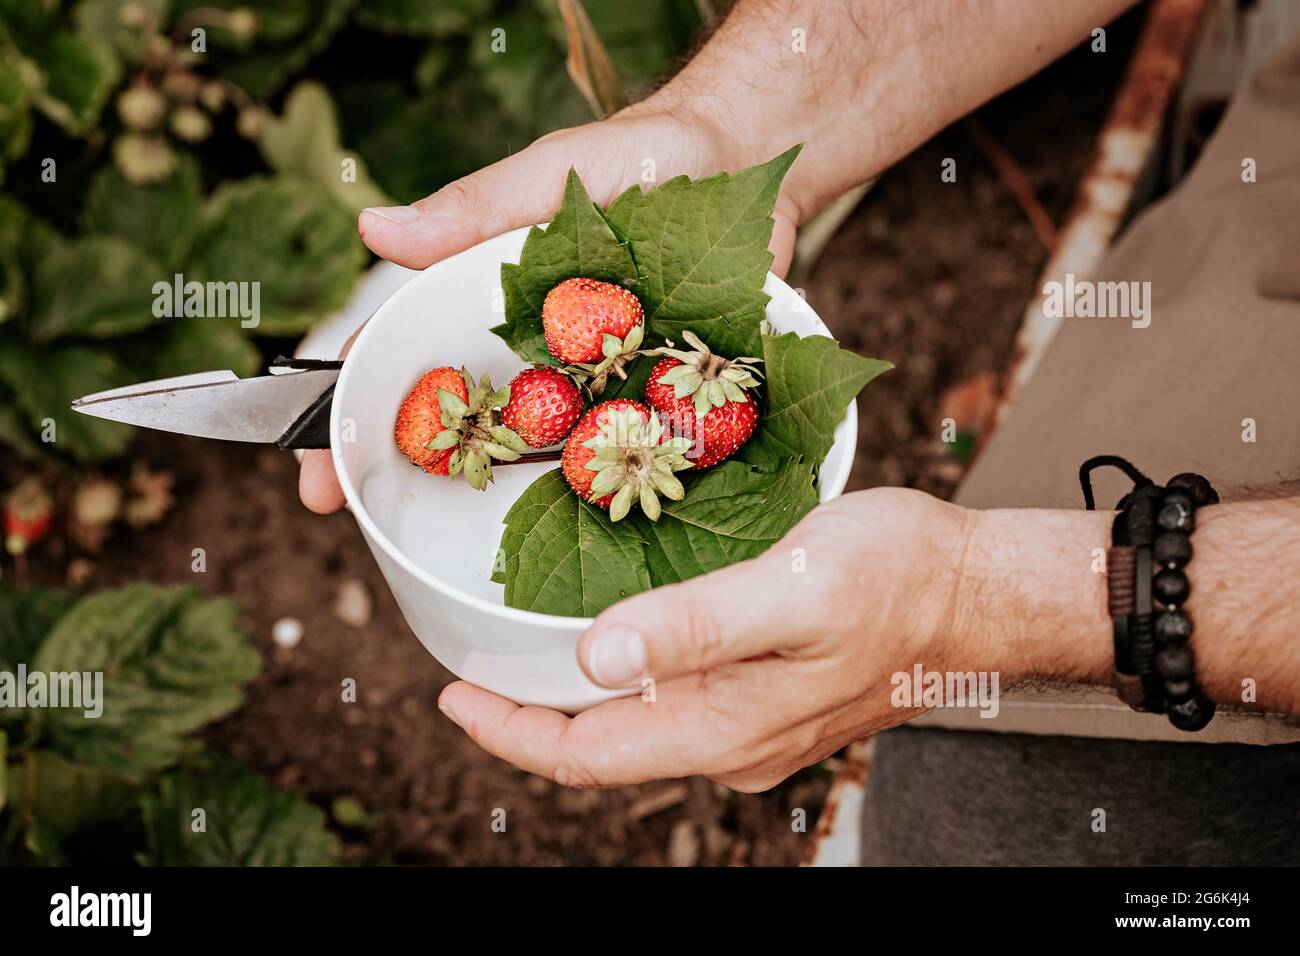 Menschliche Hände halten reife Erdbeeren in einer weißen Schüssel. Beeren ernten. Die männlichen Hände der Bauern pflücken frische rote Erdbeeren im Garten. Organisches d Stockfoto